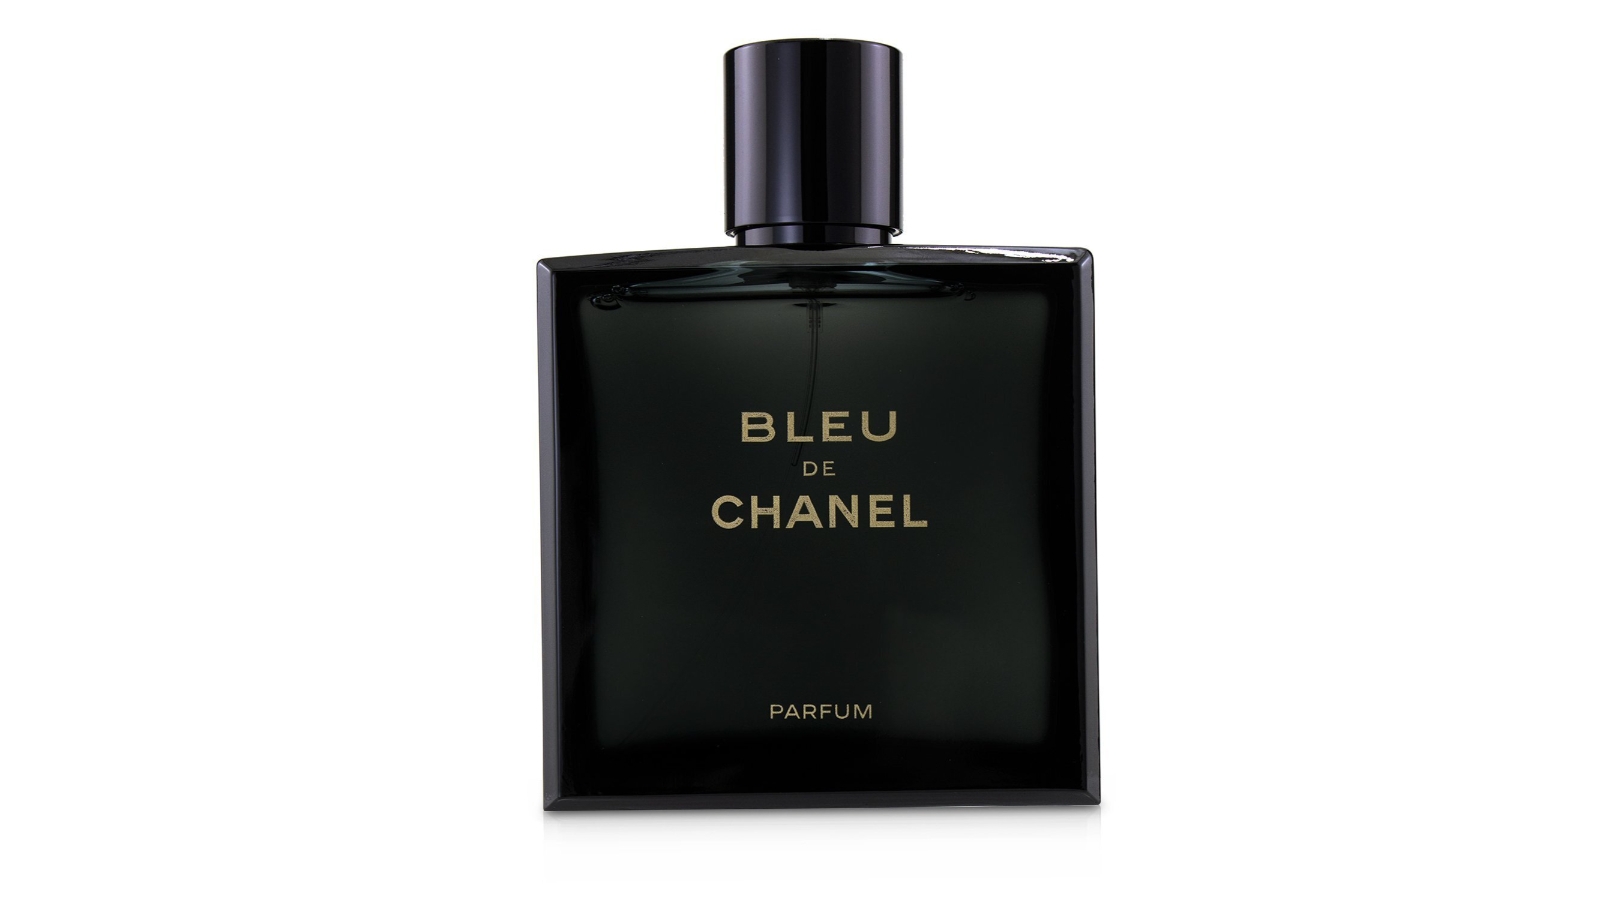 Buy Chanel No5 Eau de Parfum 100ml Online at Chemist Warehouse